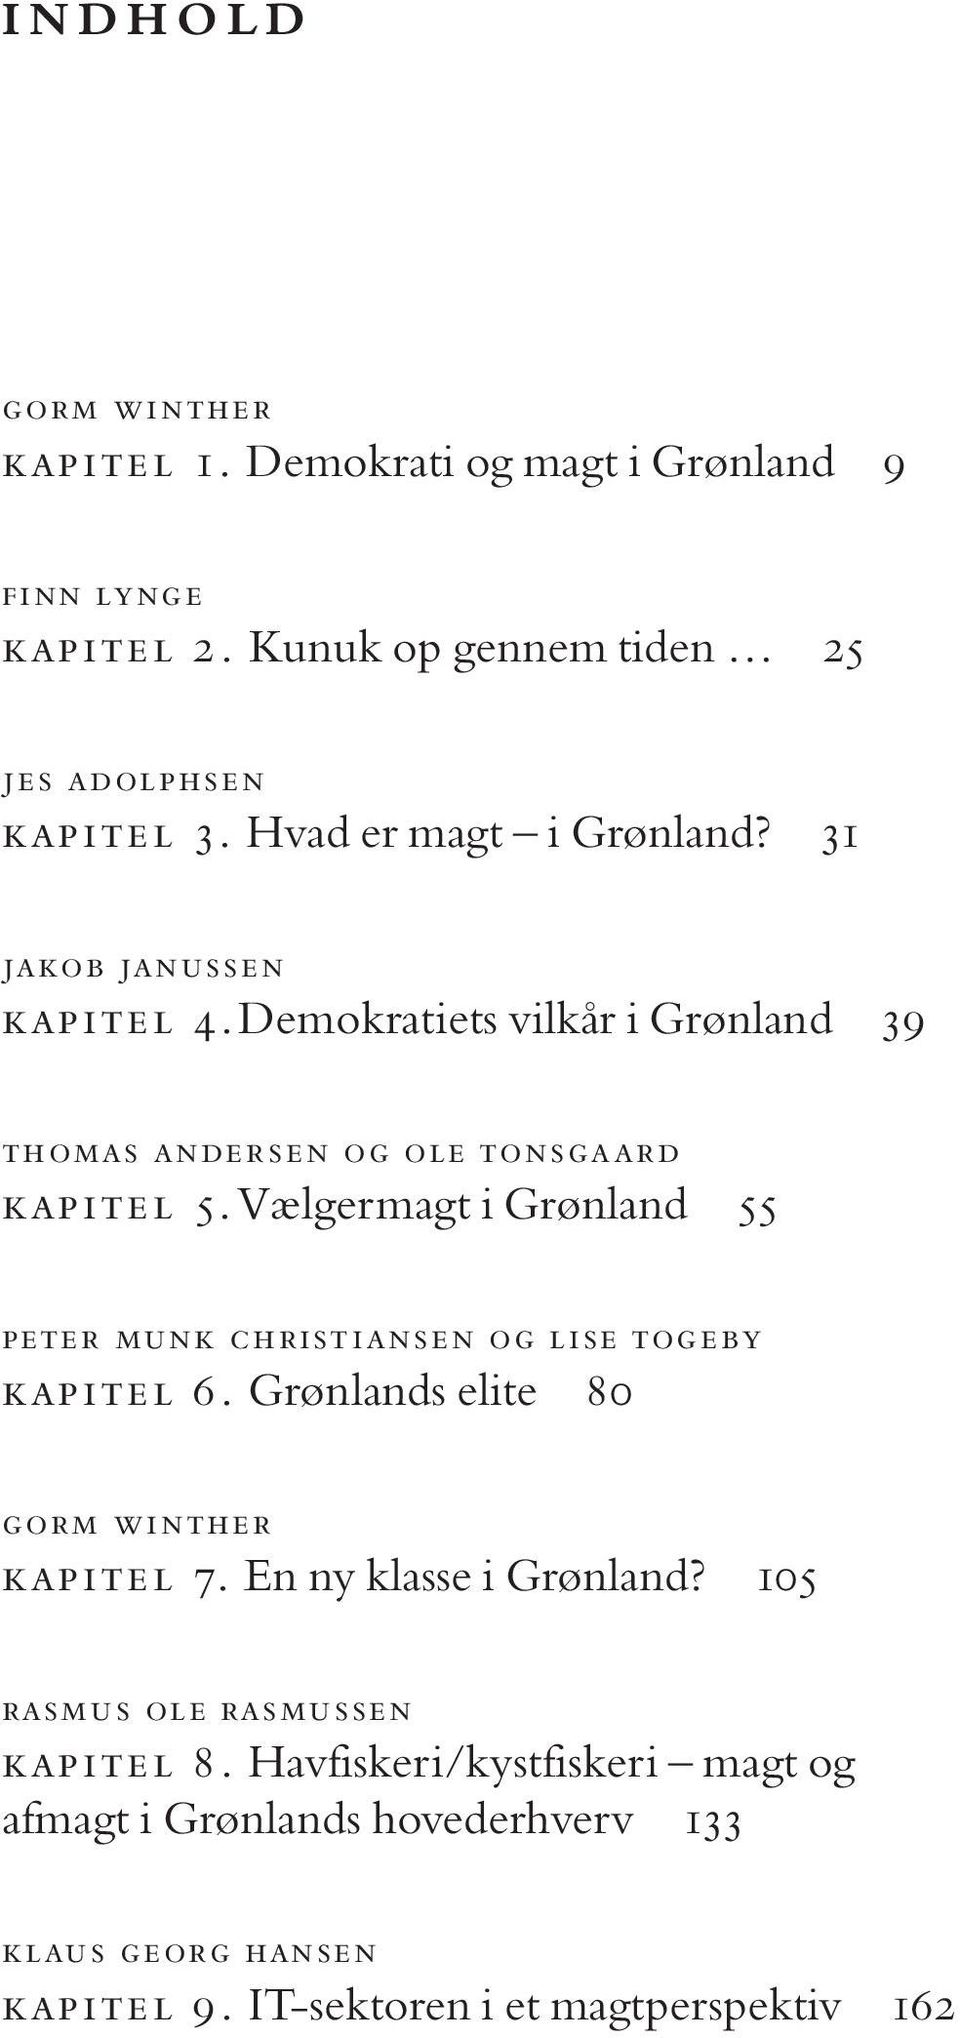 Vælgermagt i Grønland 55 peter munk christiansen og lise togeby kapitel 6. Grønlands elite 80 gorm winther kapitel 7. En ny klasse i Grønland?